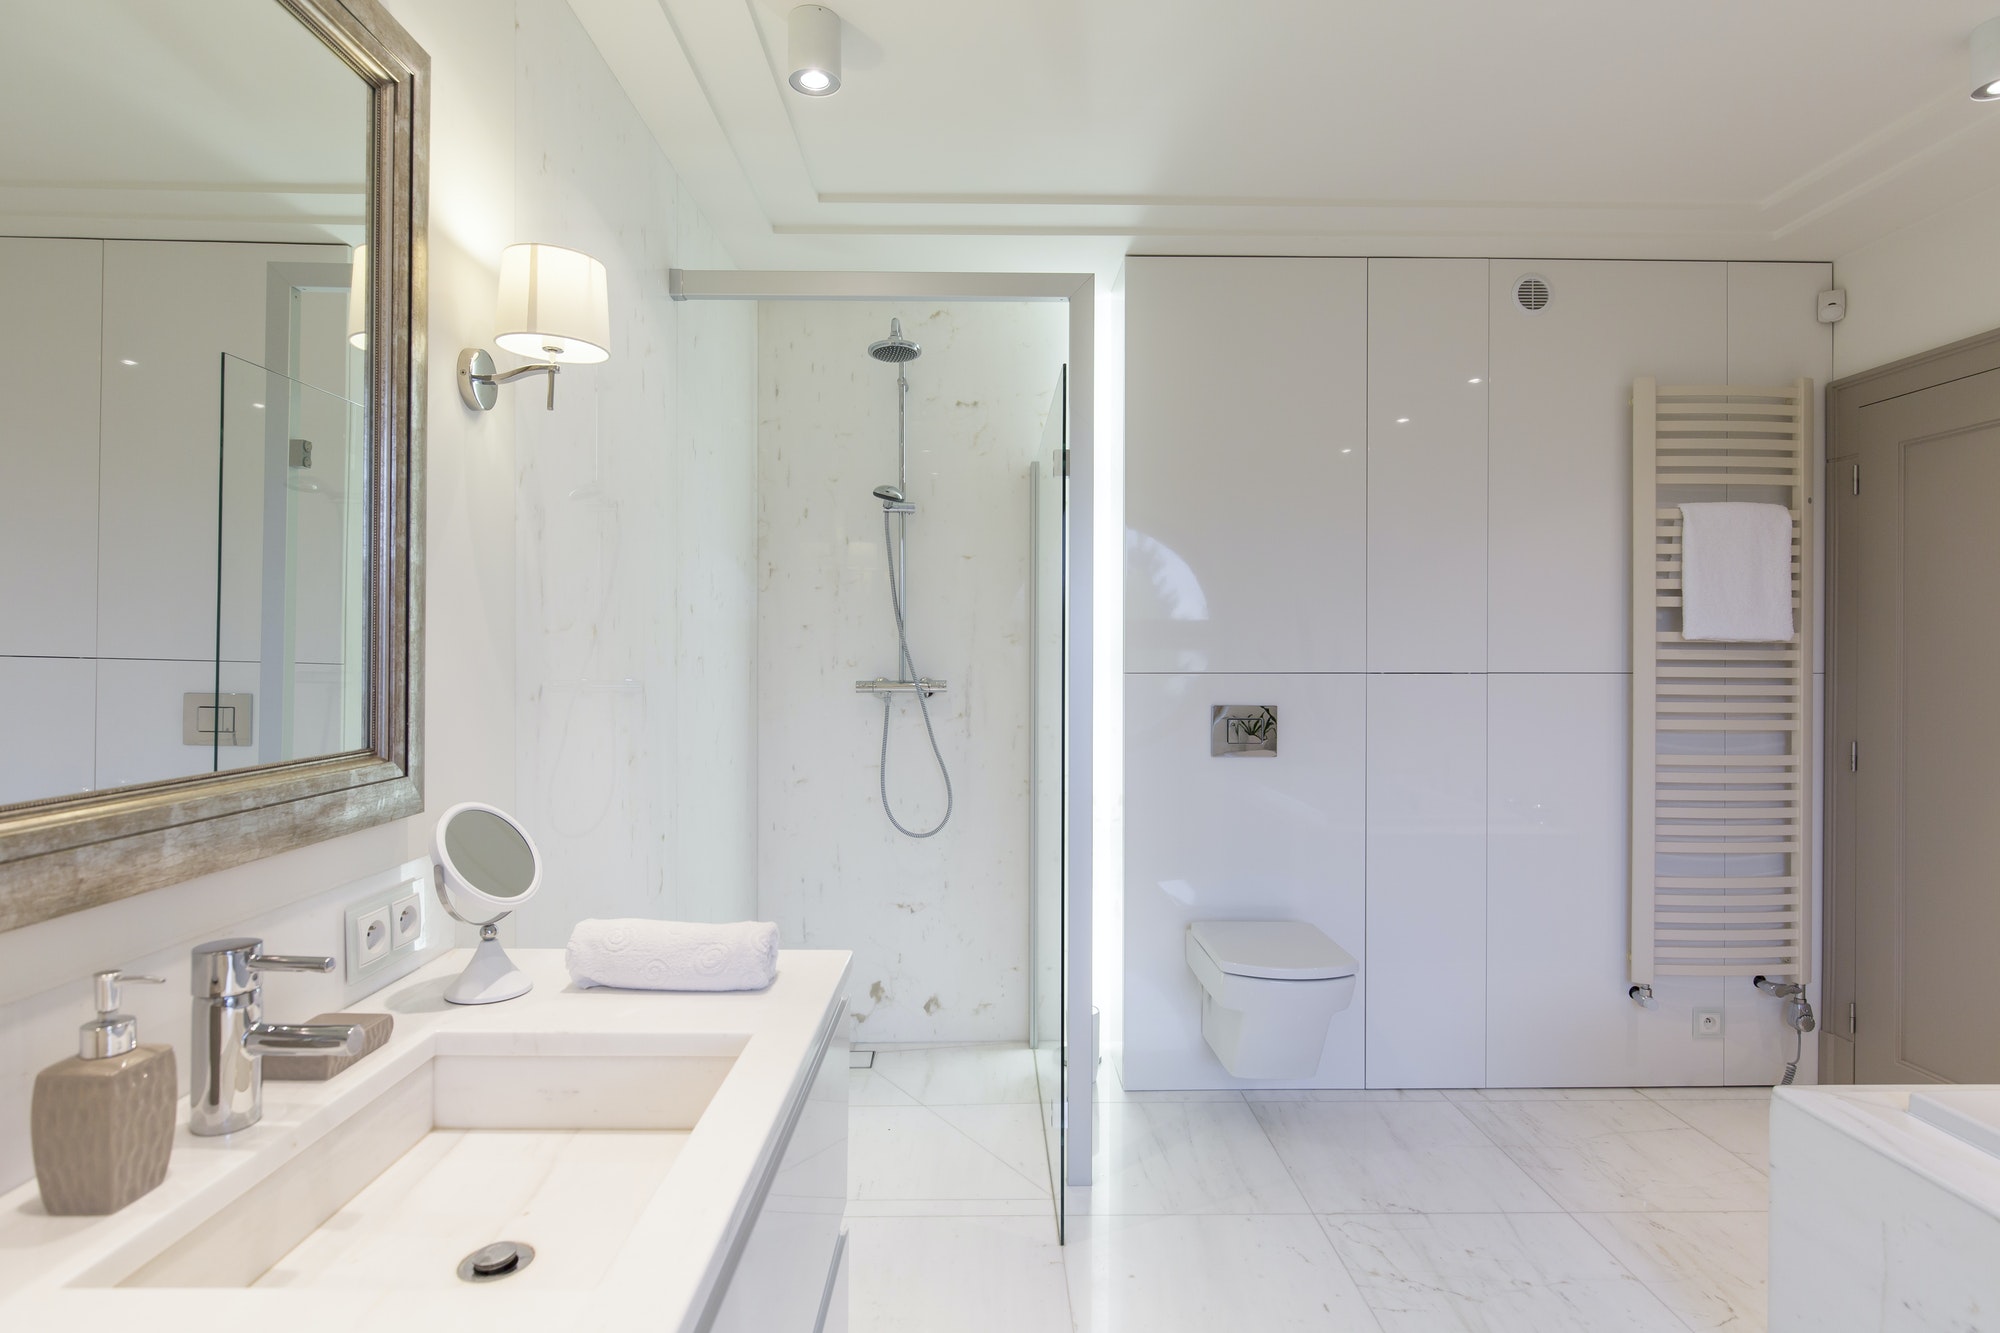 Reforma Integral Baño Baño moderno con cabina de ducha y mampara